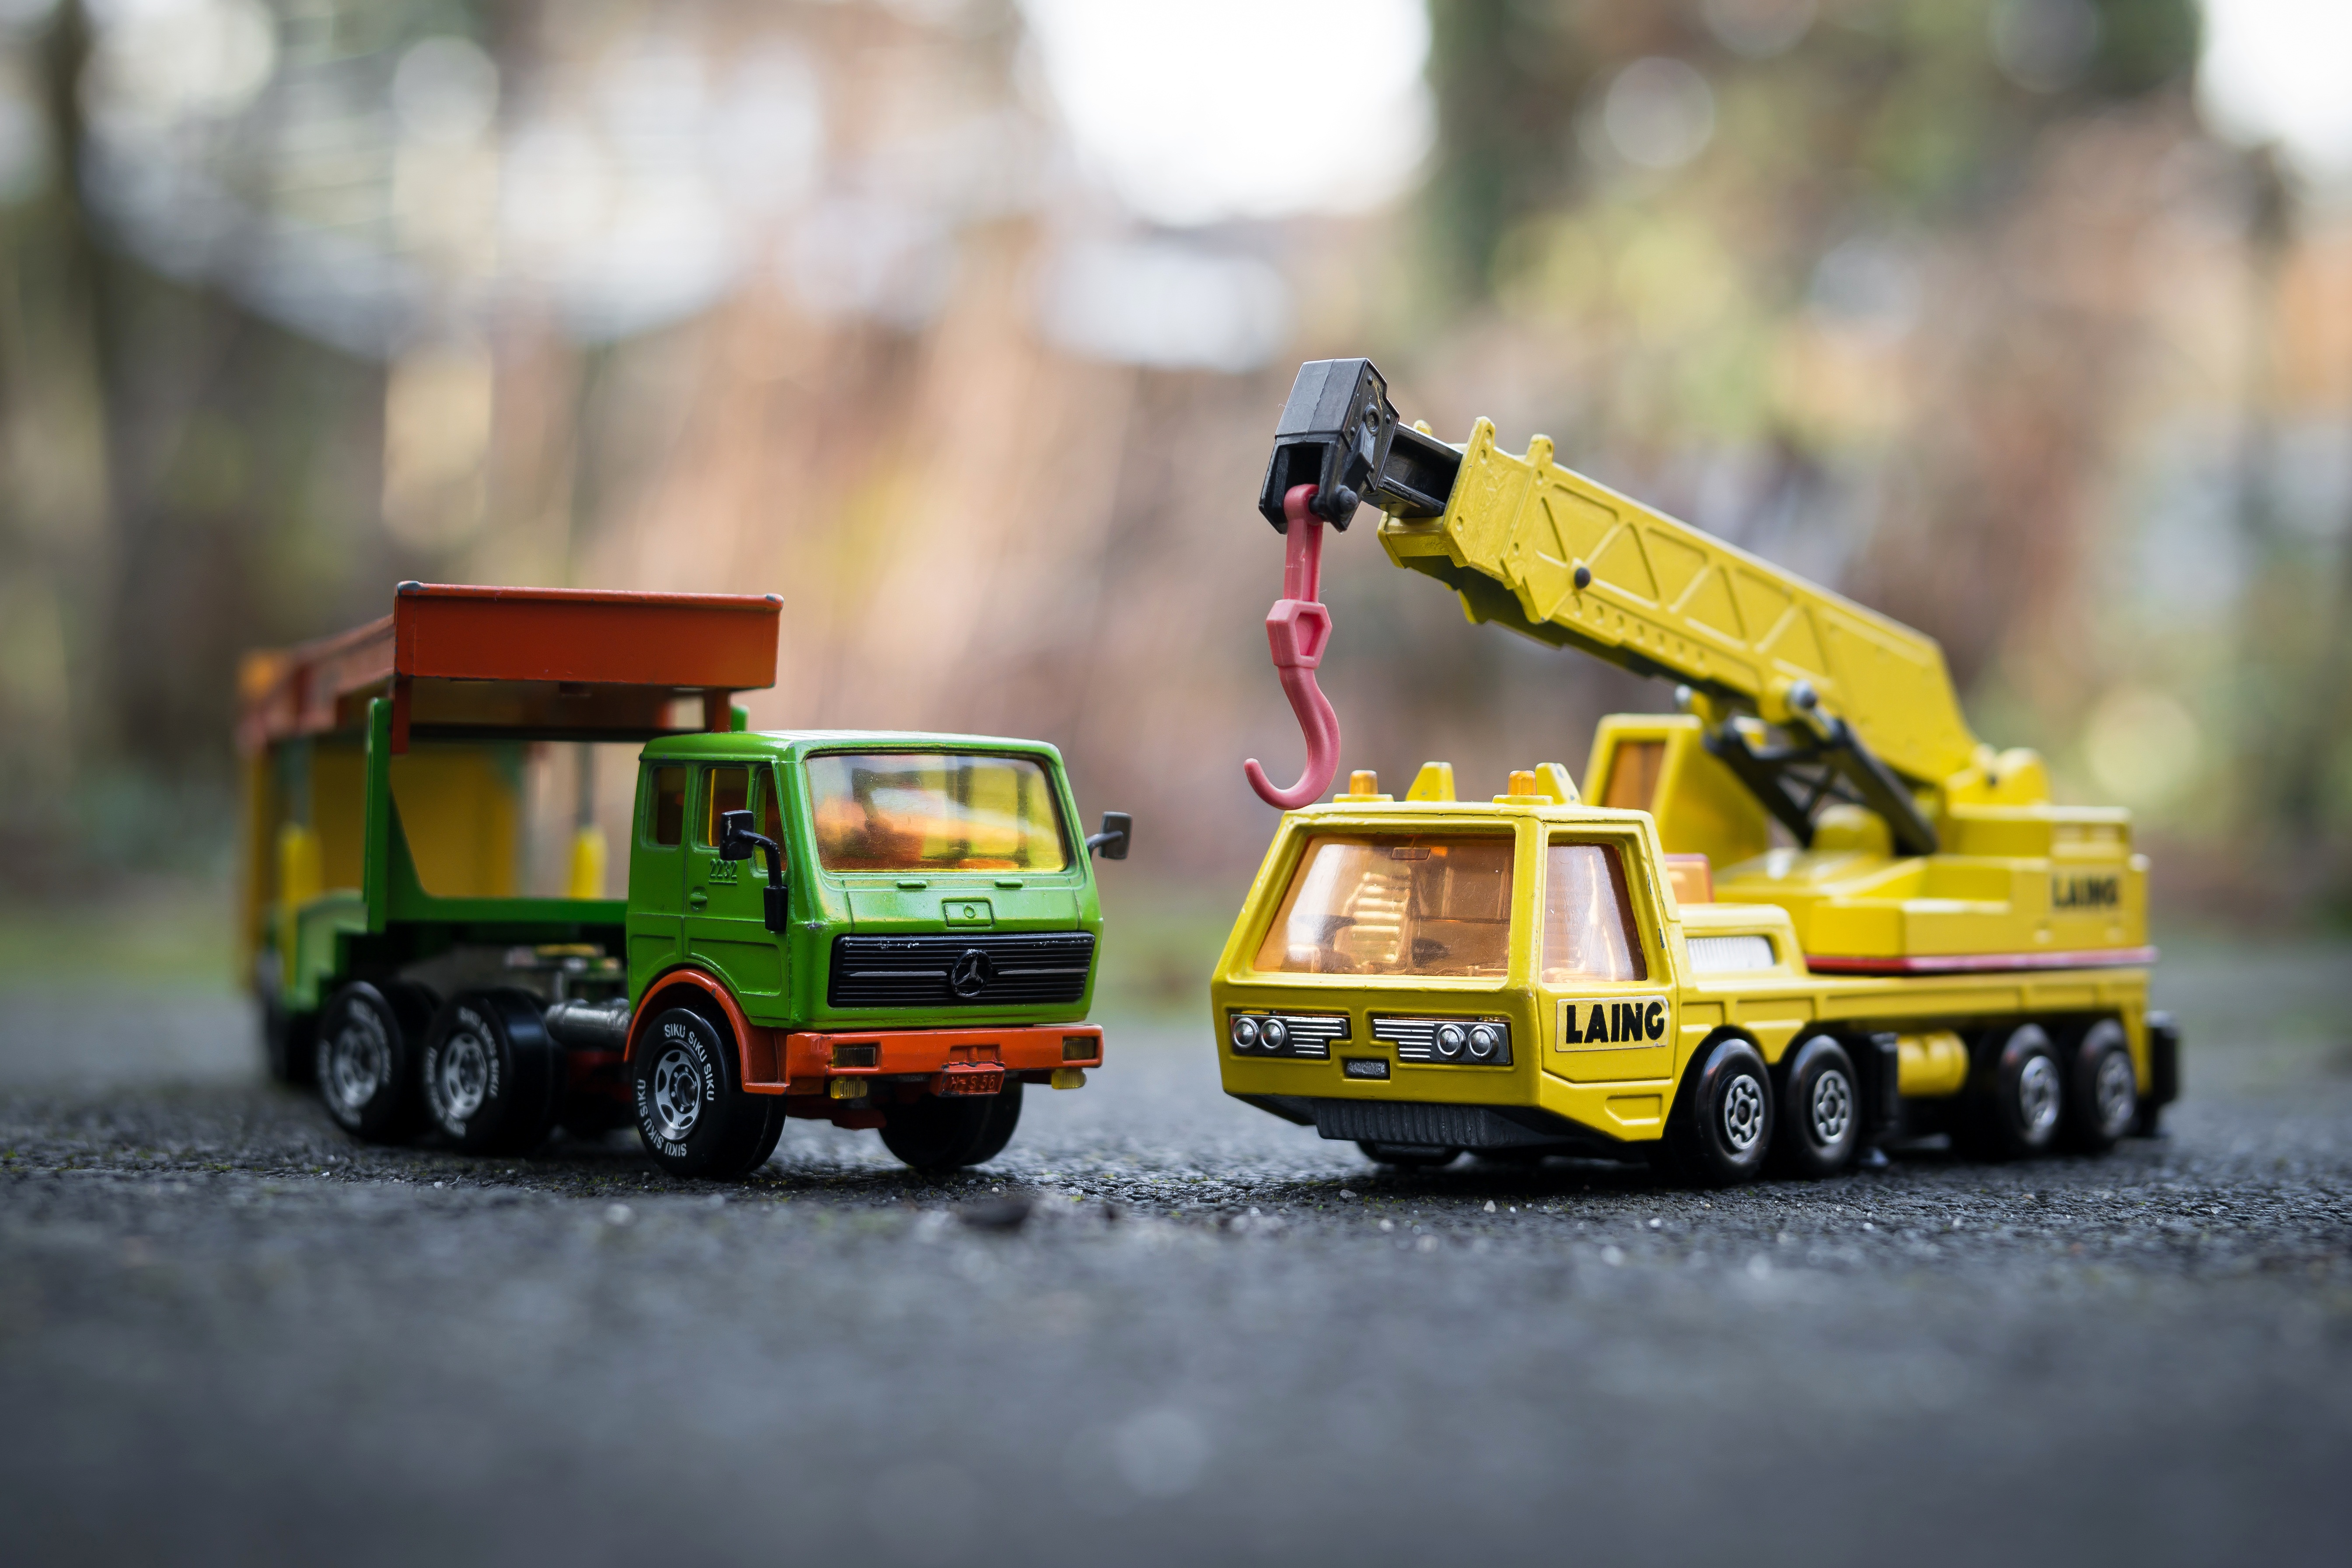 Toy Truck and Crane by Didgeman